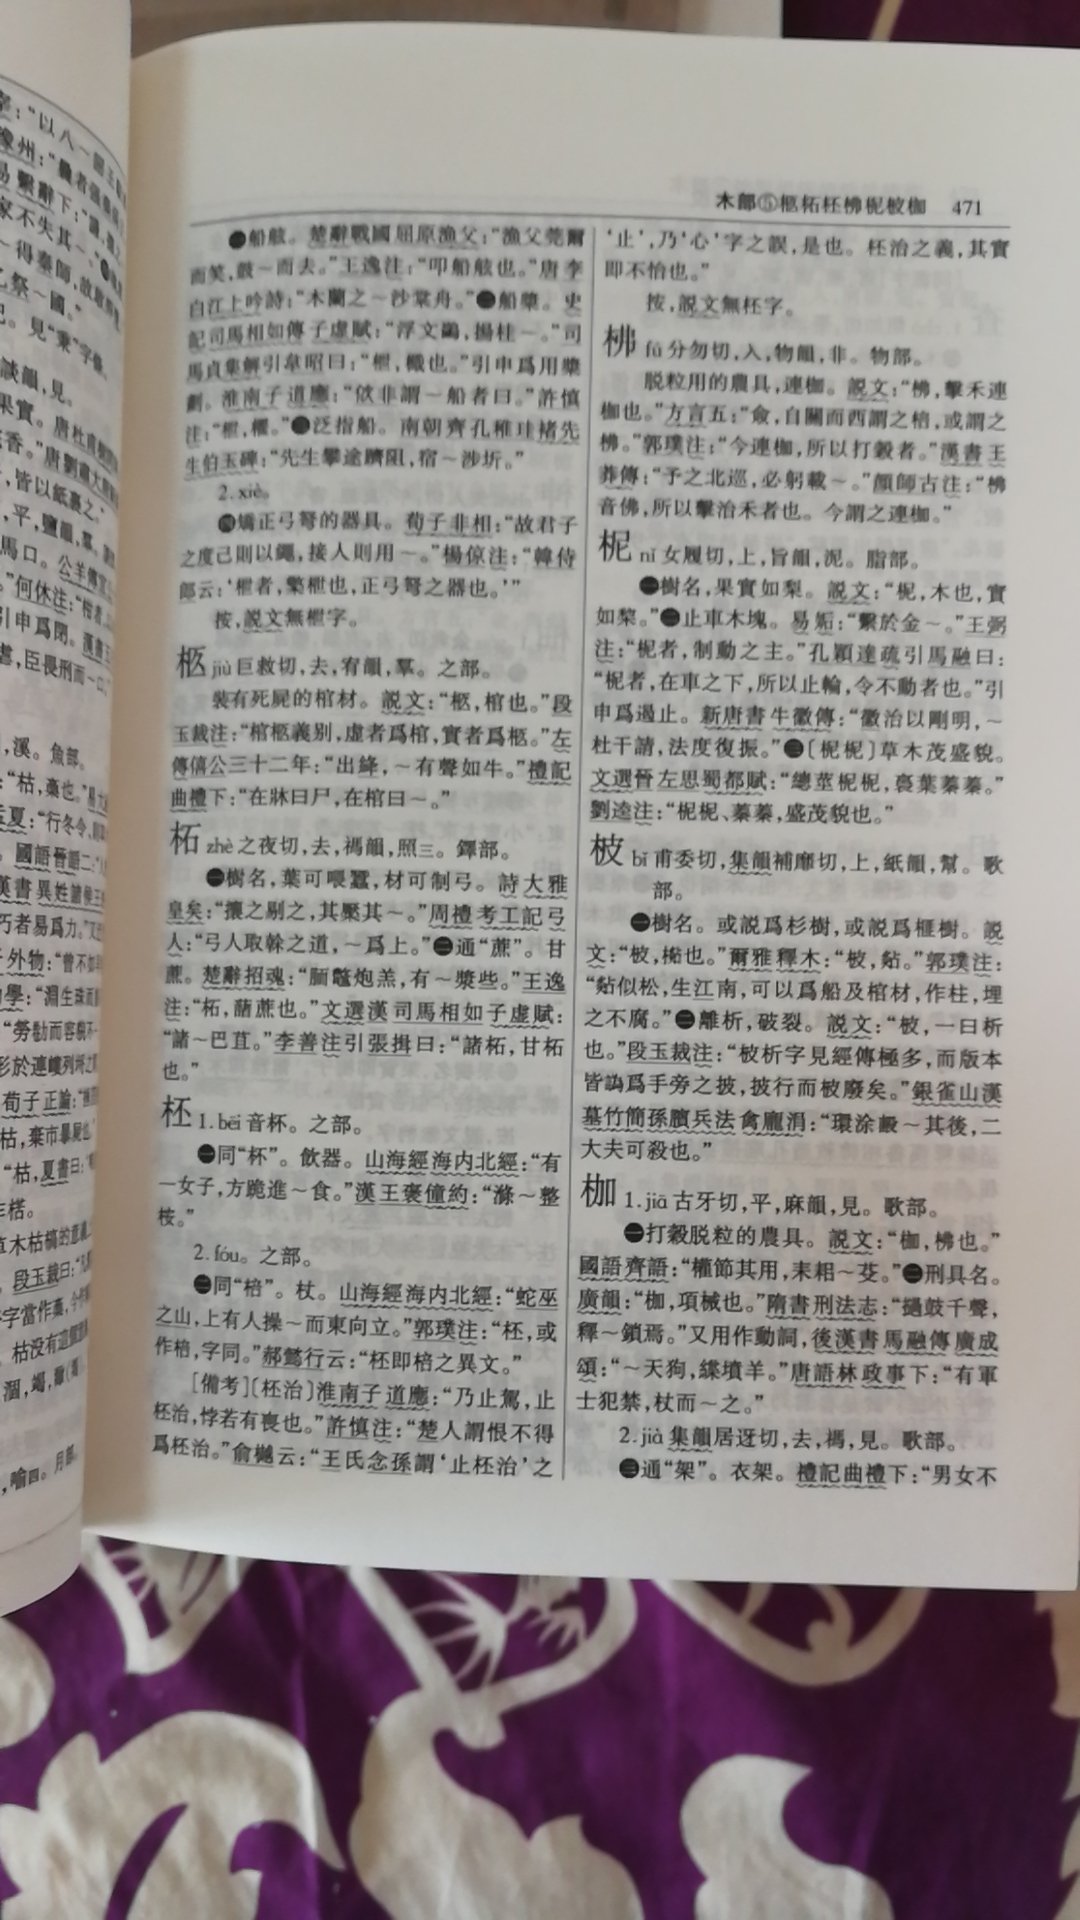 也是在书店看过，觉得很好，趁活动在拿下。本有《古代汉语词典》，又买了这本。